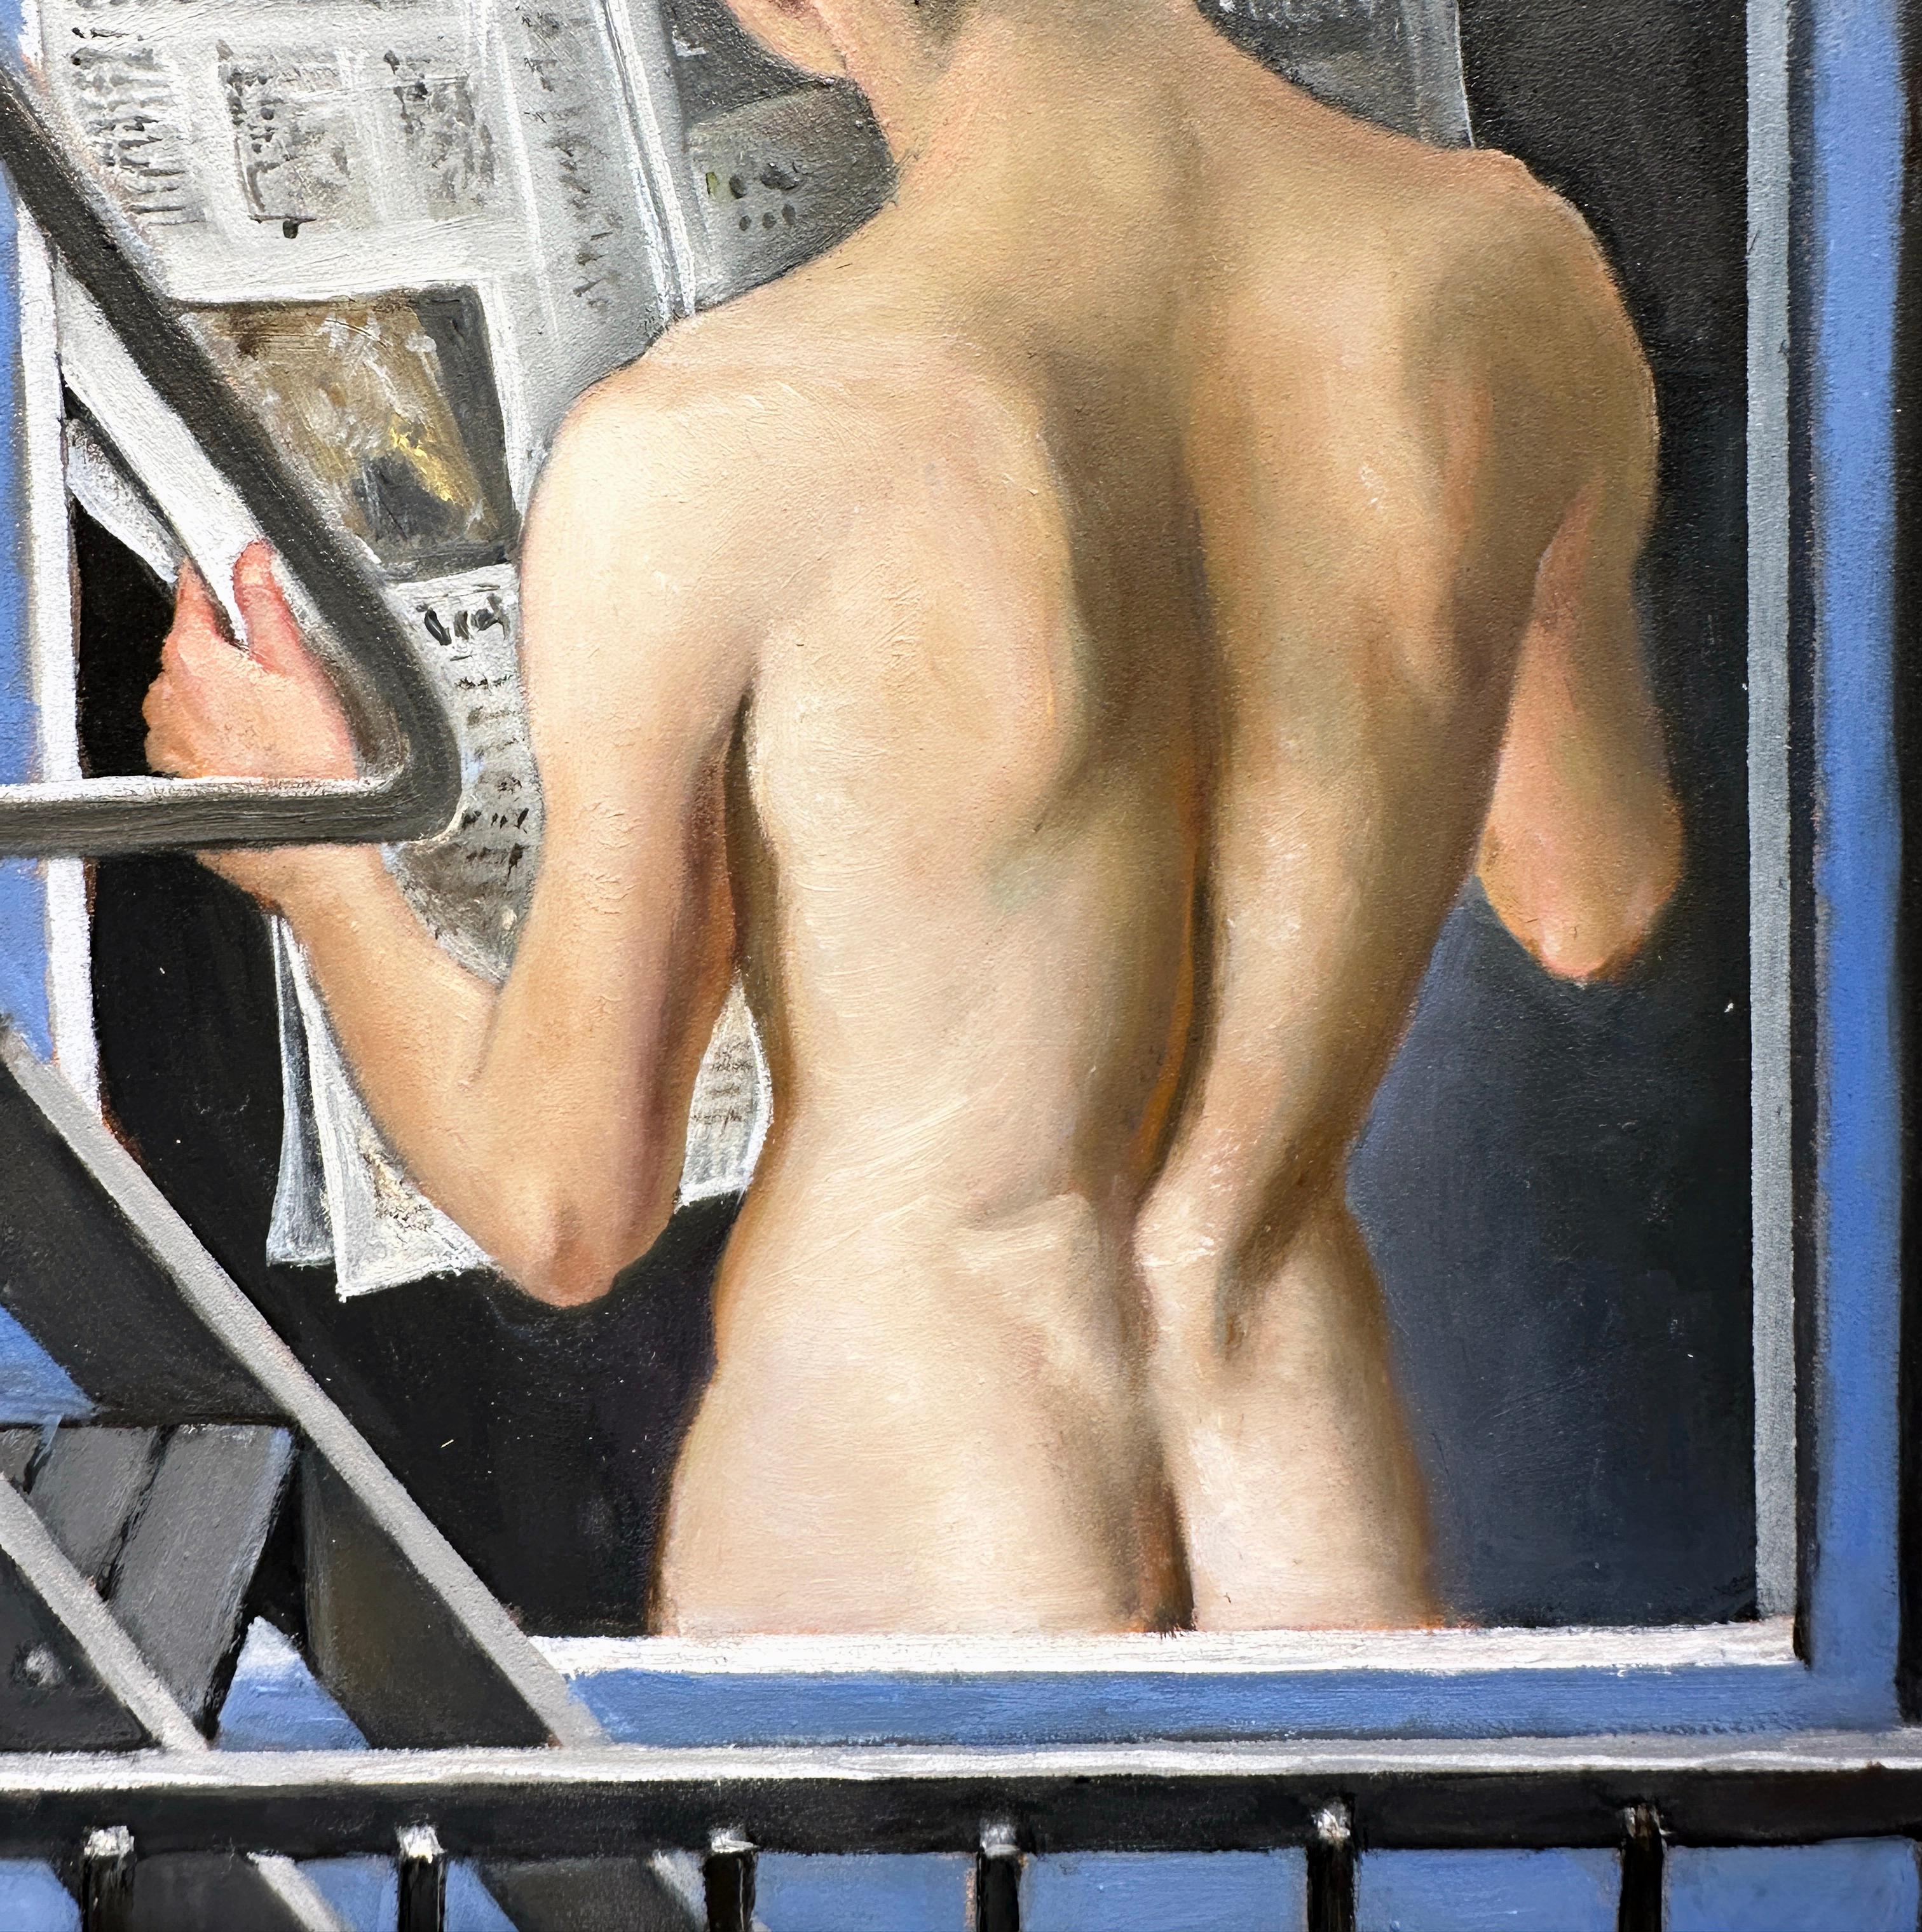 Morning News - Voyeuristic View of Nude männlicher Torso Through the Fire Escape  – Painting von Bruno Surdo